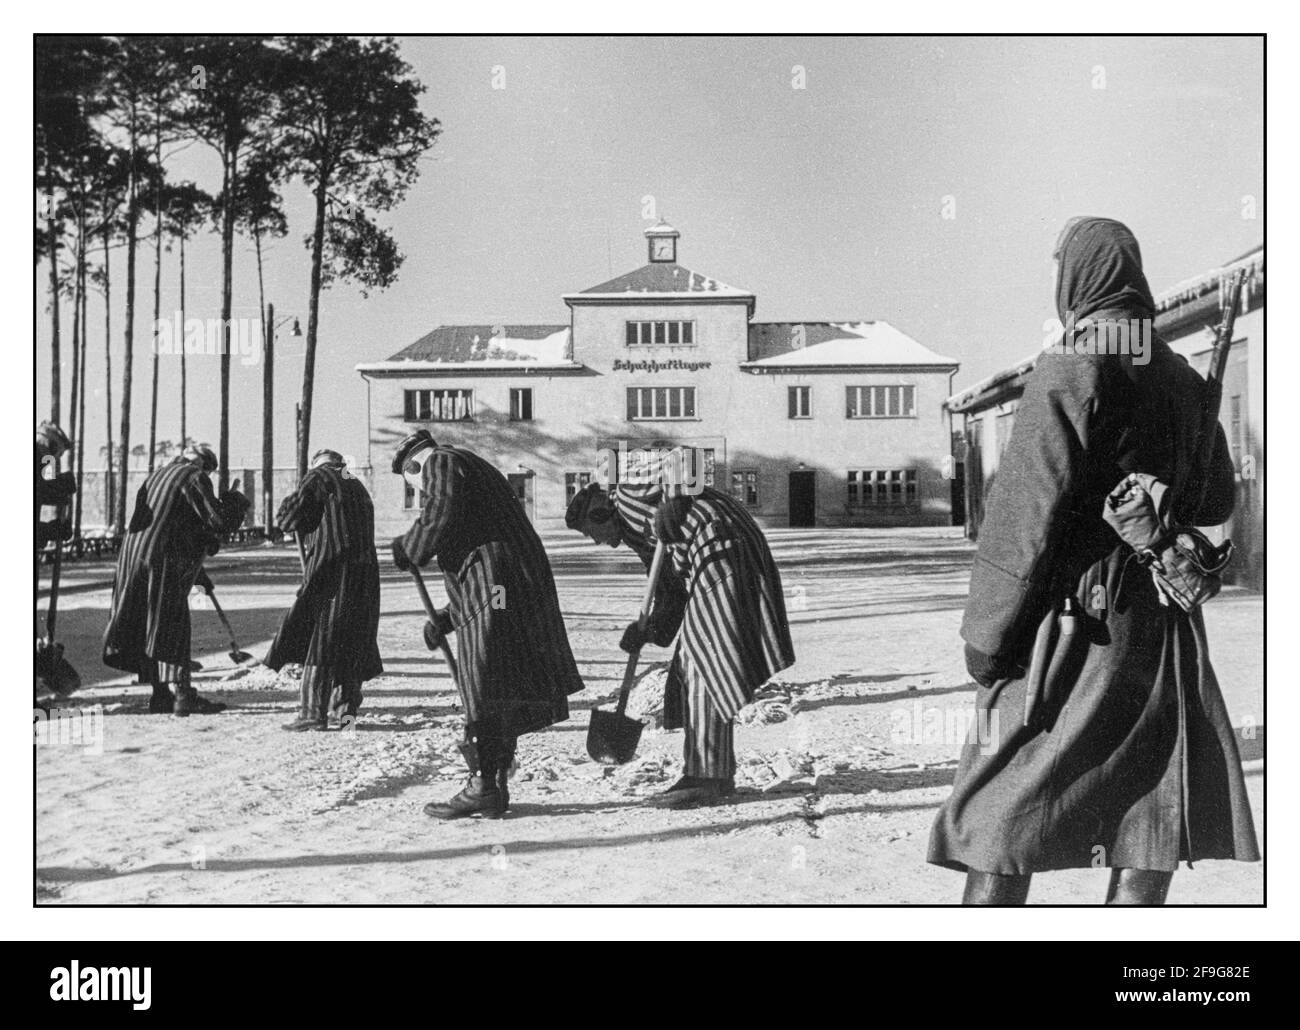 WW2 40 CAMP DE CONCENTRATION NAZI camp de concentration de Sachsenhausen en dehors de Berlin en hiver avec des prisonniers portant des uniformes rayés de nettoyer le Chemin de neige Allemagne nazie Seconde Guerre mondiale Allemagne nazie Banque D'Images